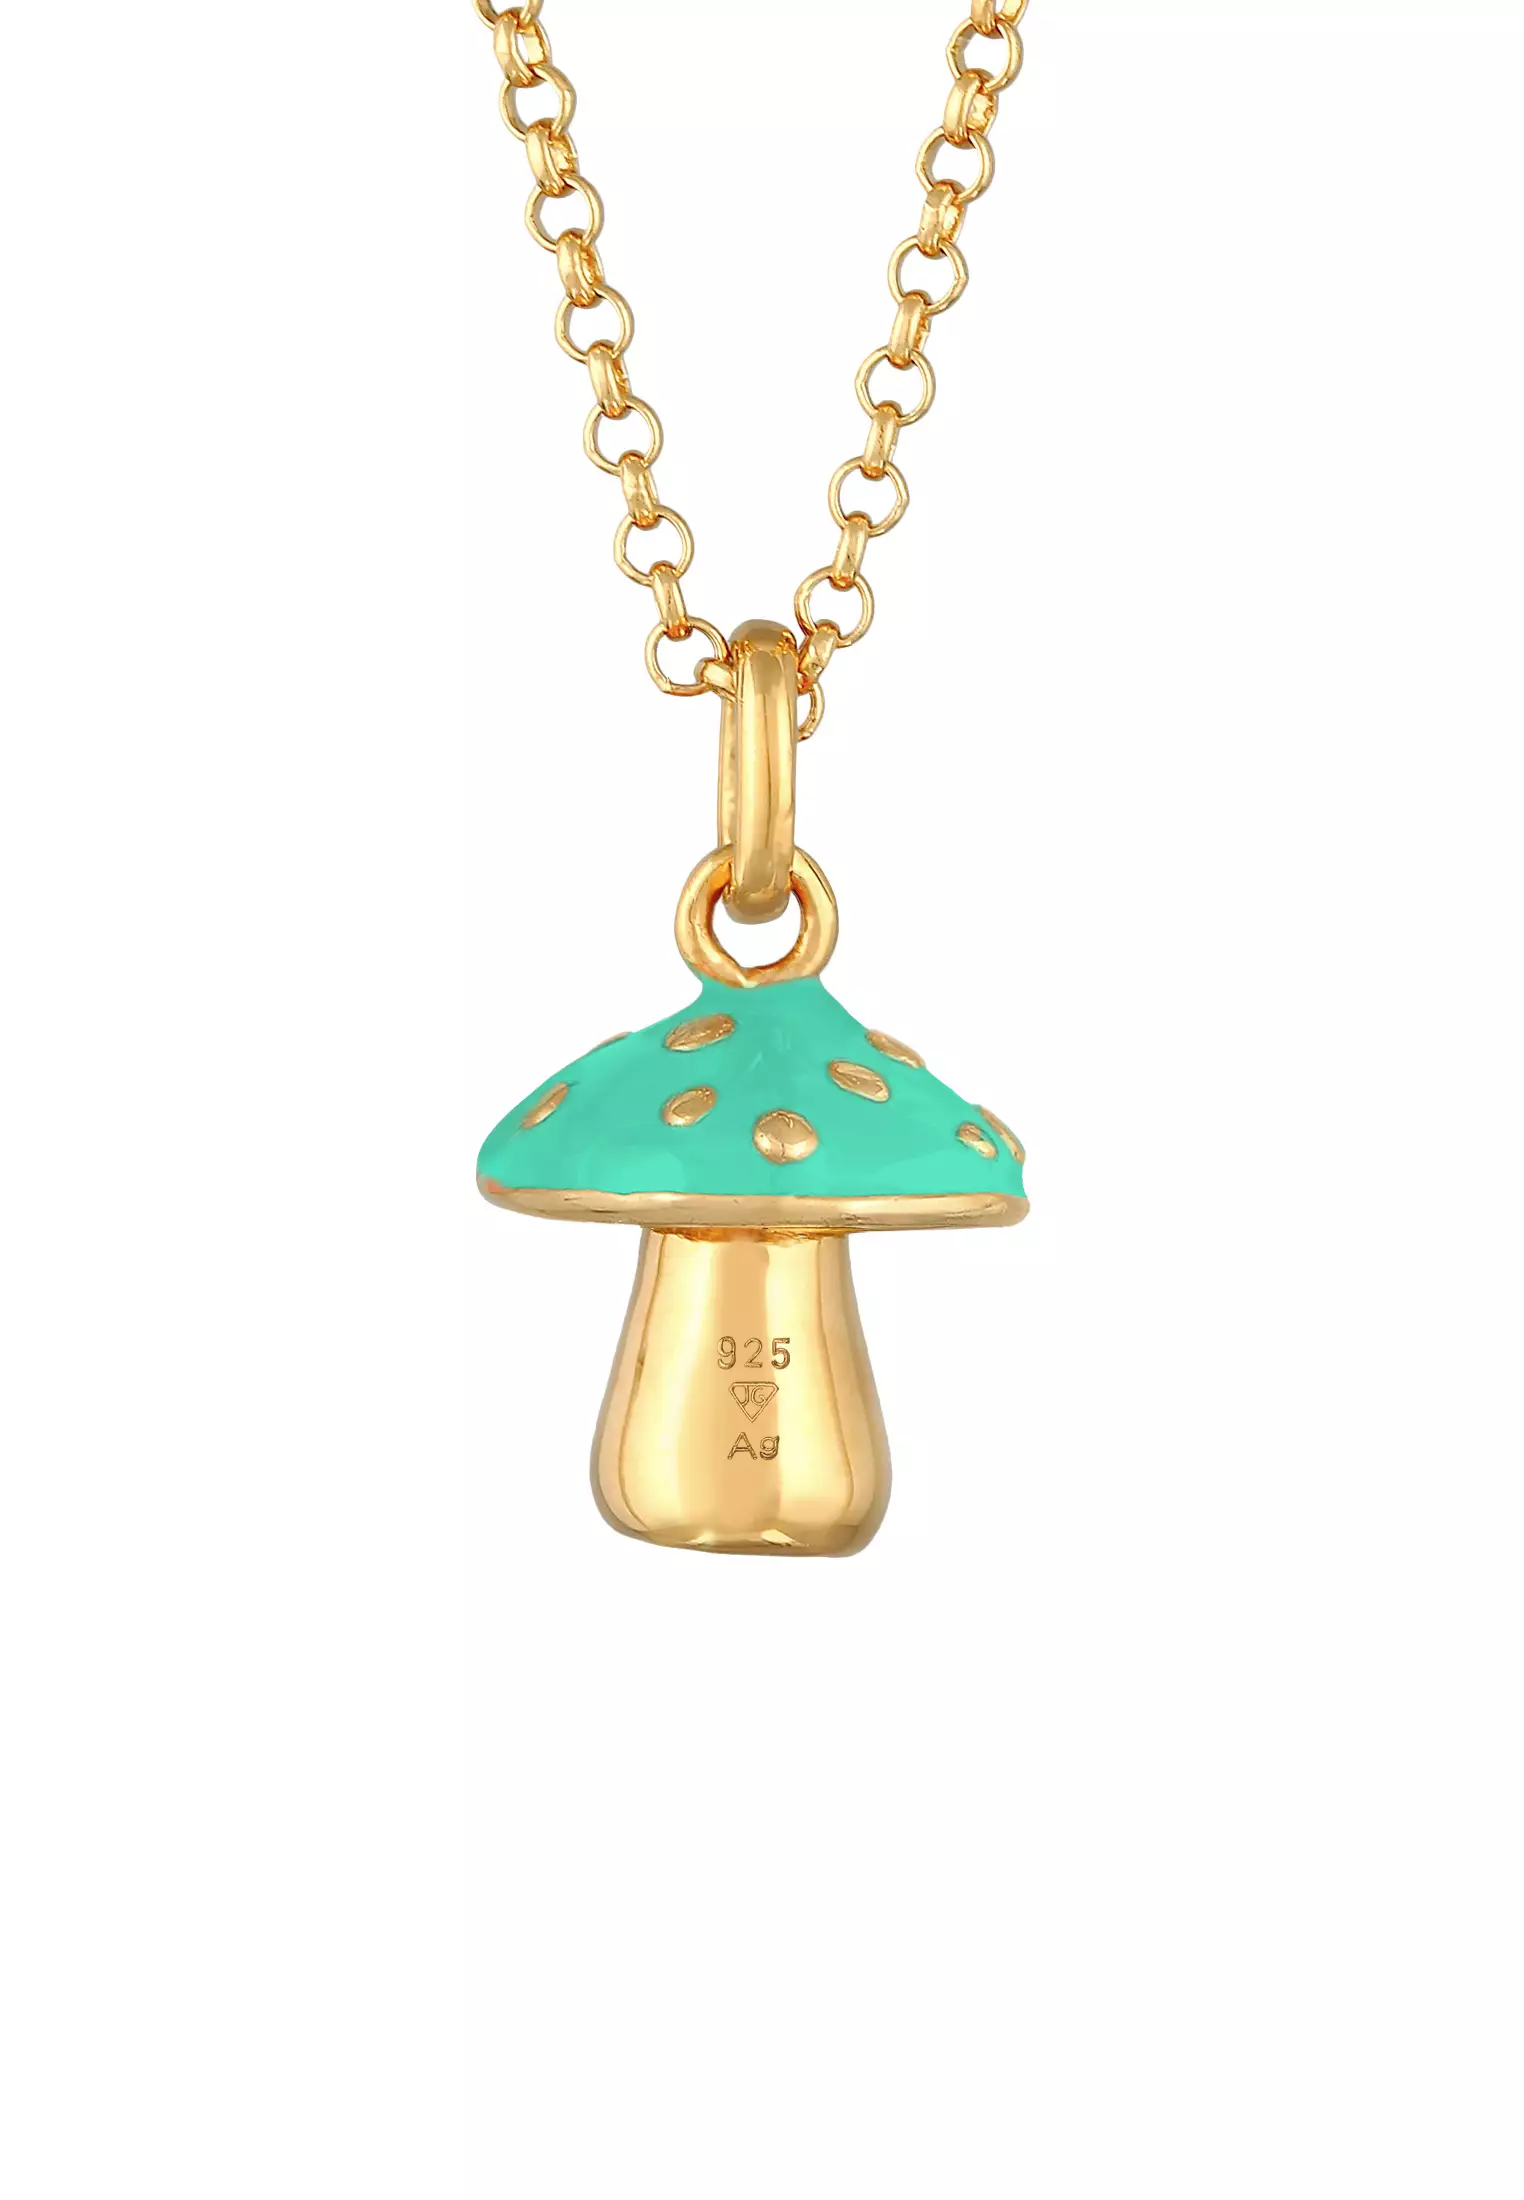 Necklace Mushroom Pendant Enamel Turquoise Gold Plated